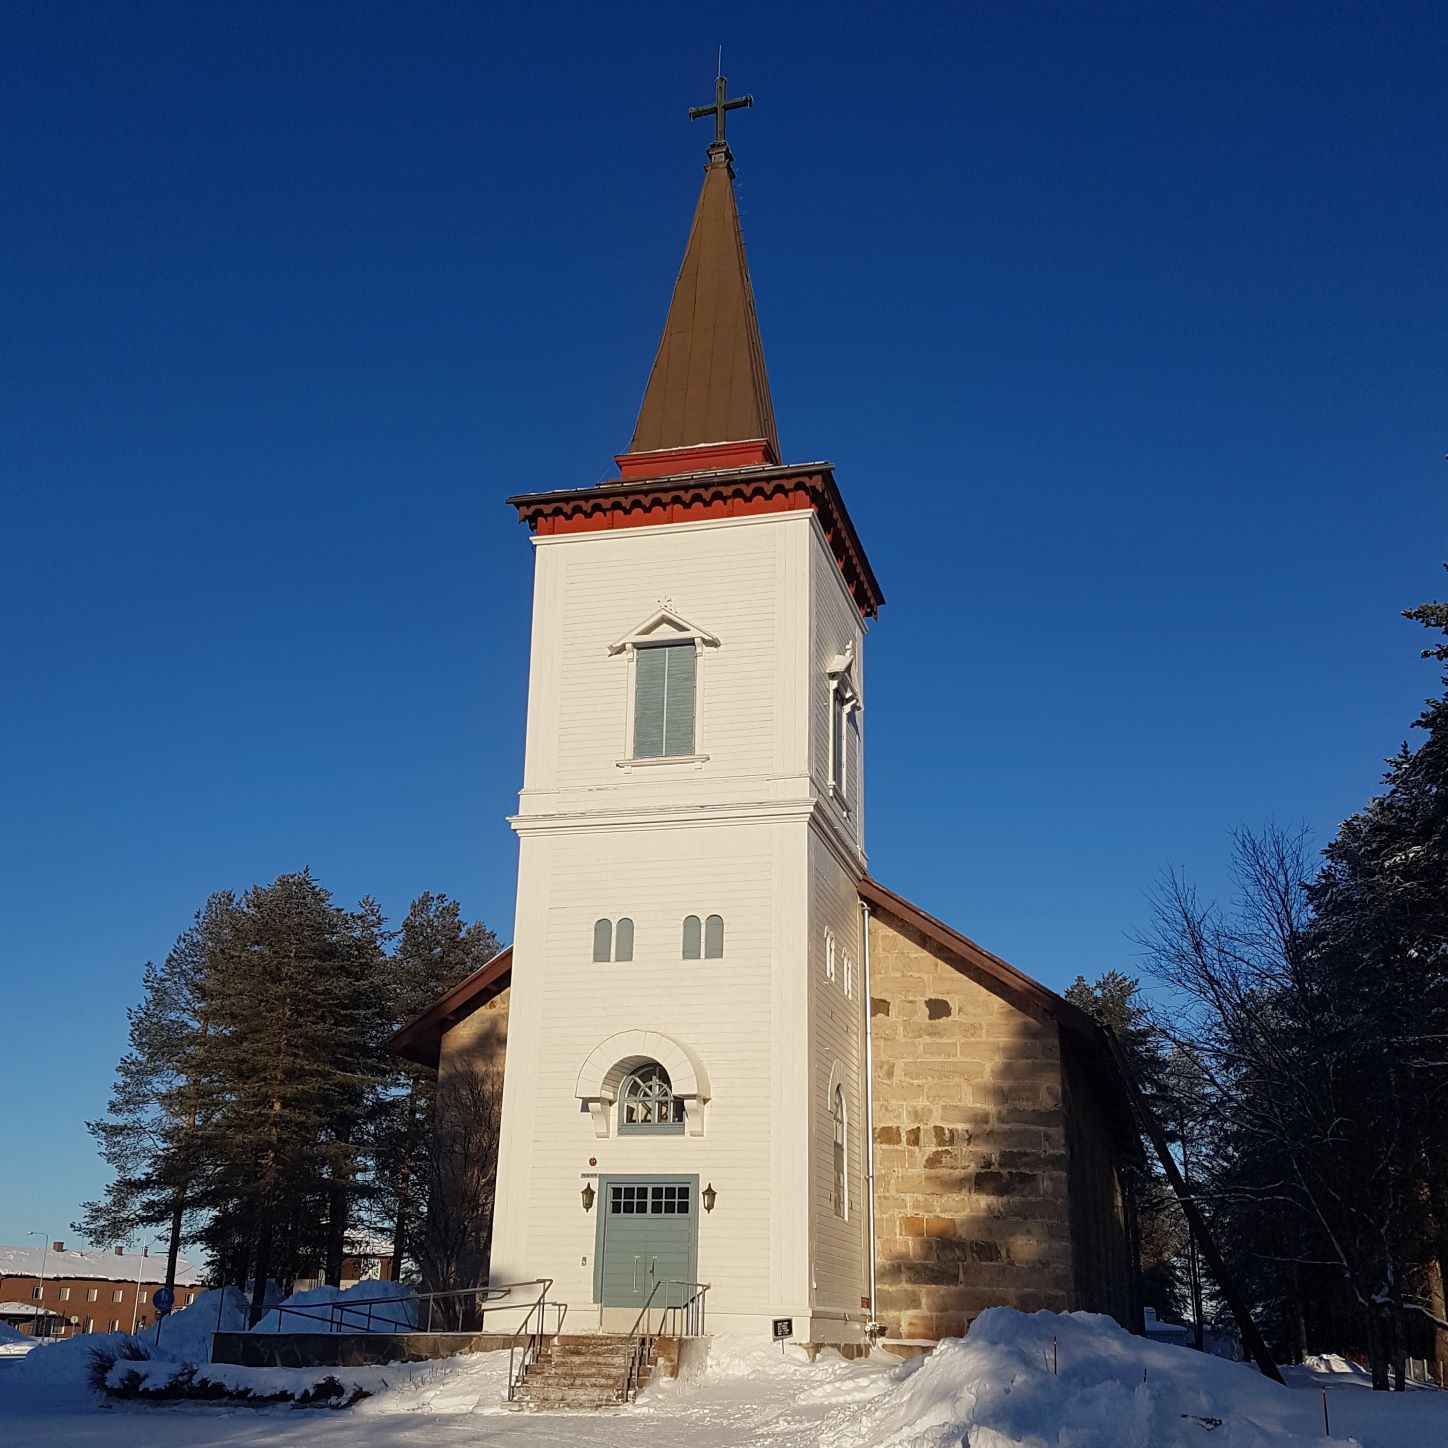 Sodankylän uusi kirkko kuvattu talvipäivänä